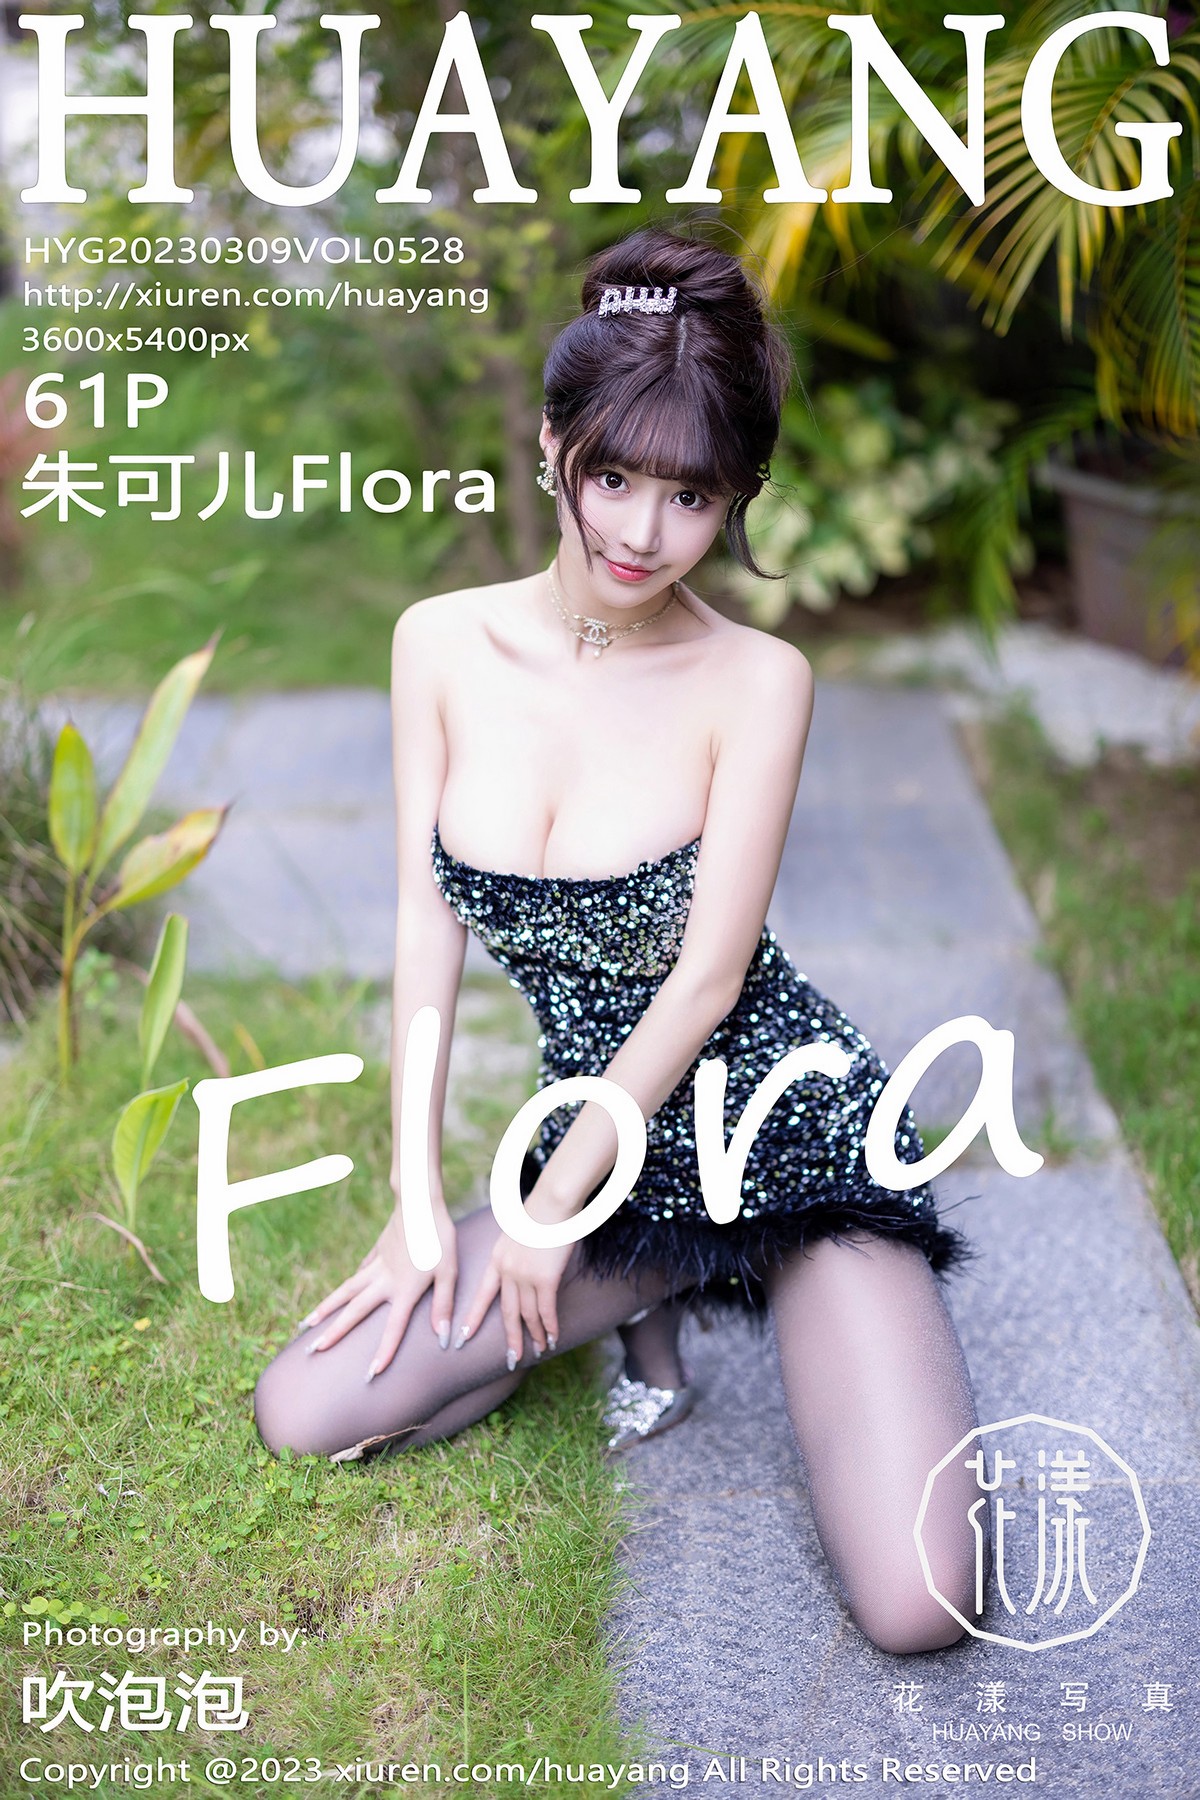 【HuaYang花漾】2023.03.09 Vol.528 朱可兒Flora 完整版無水印寫真【61P】 - 貼圖 - 絲襪美腿 -